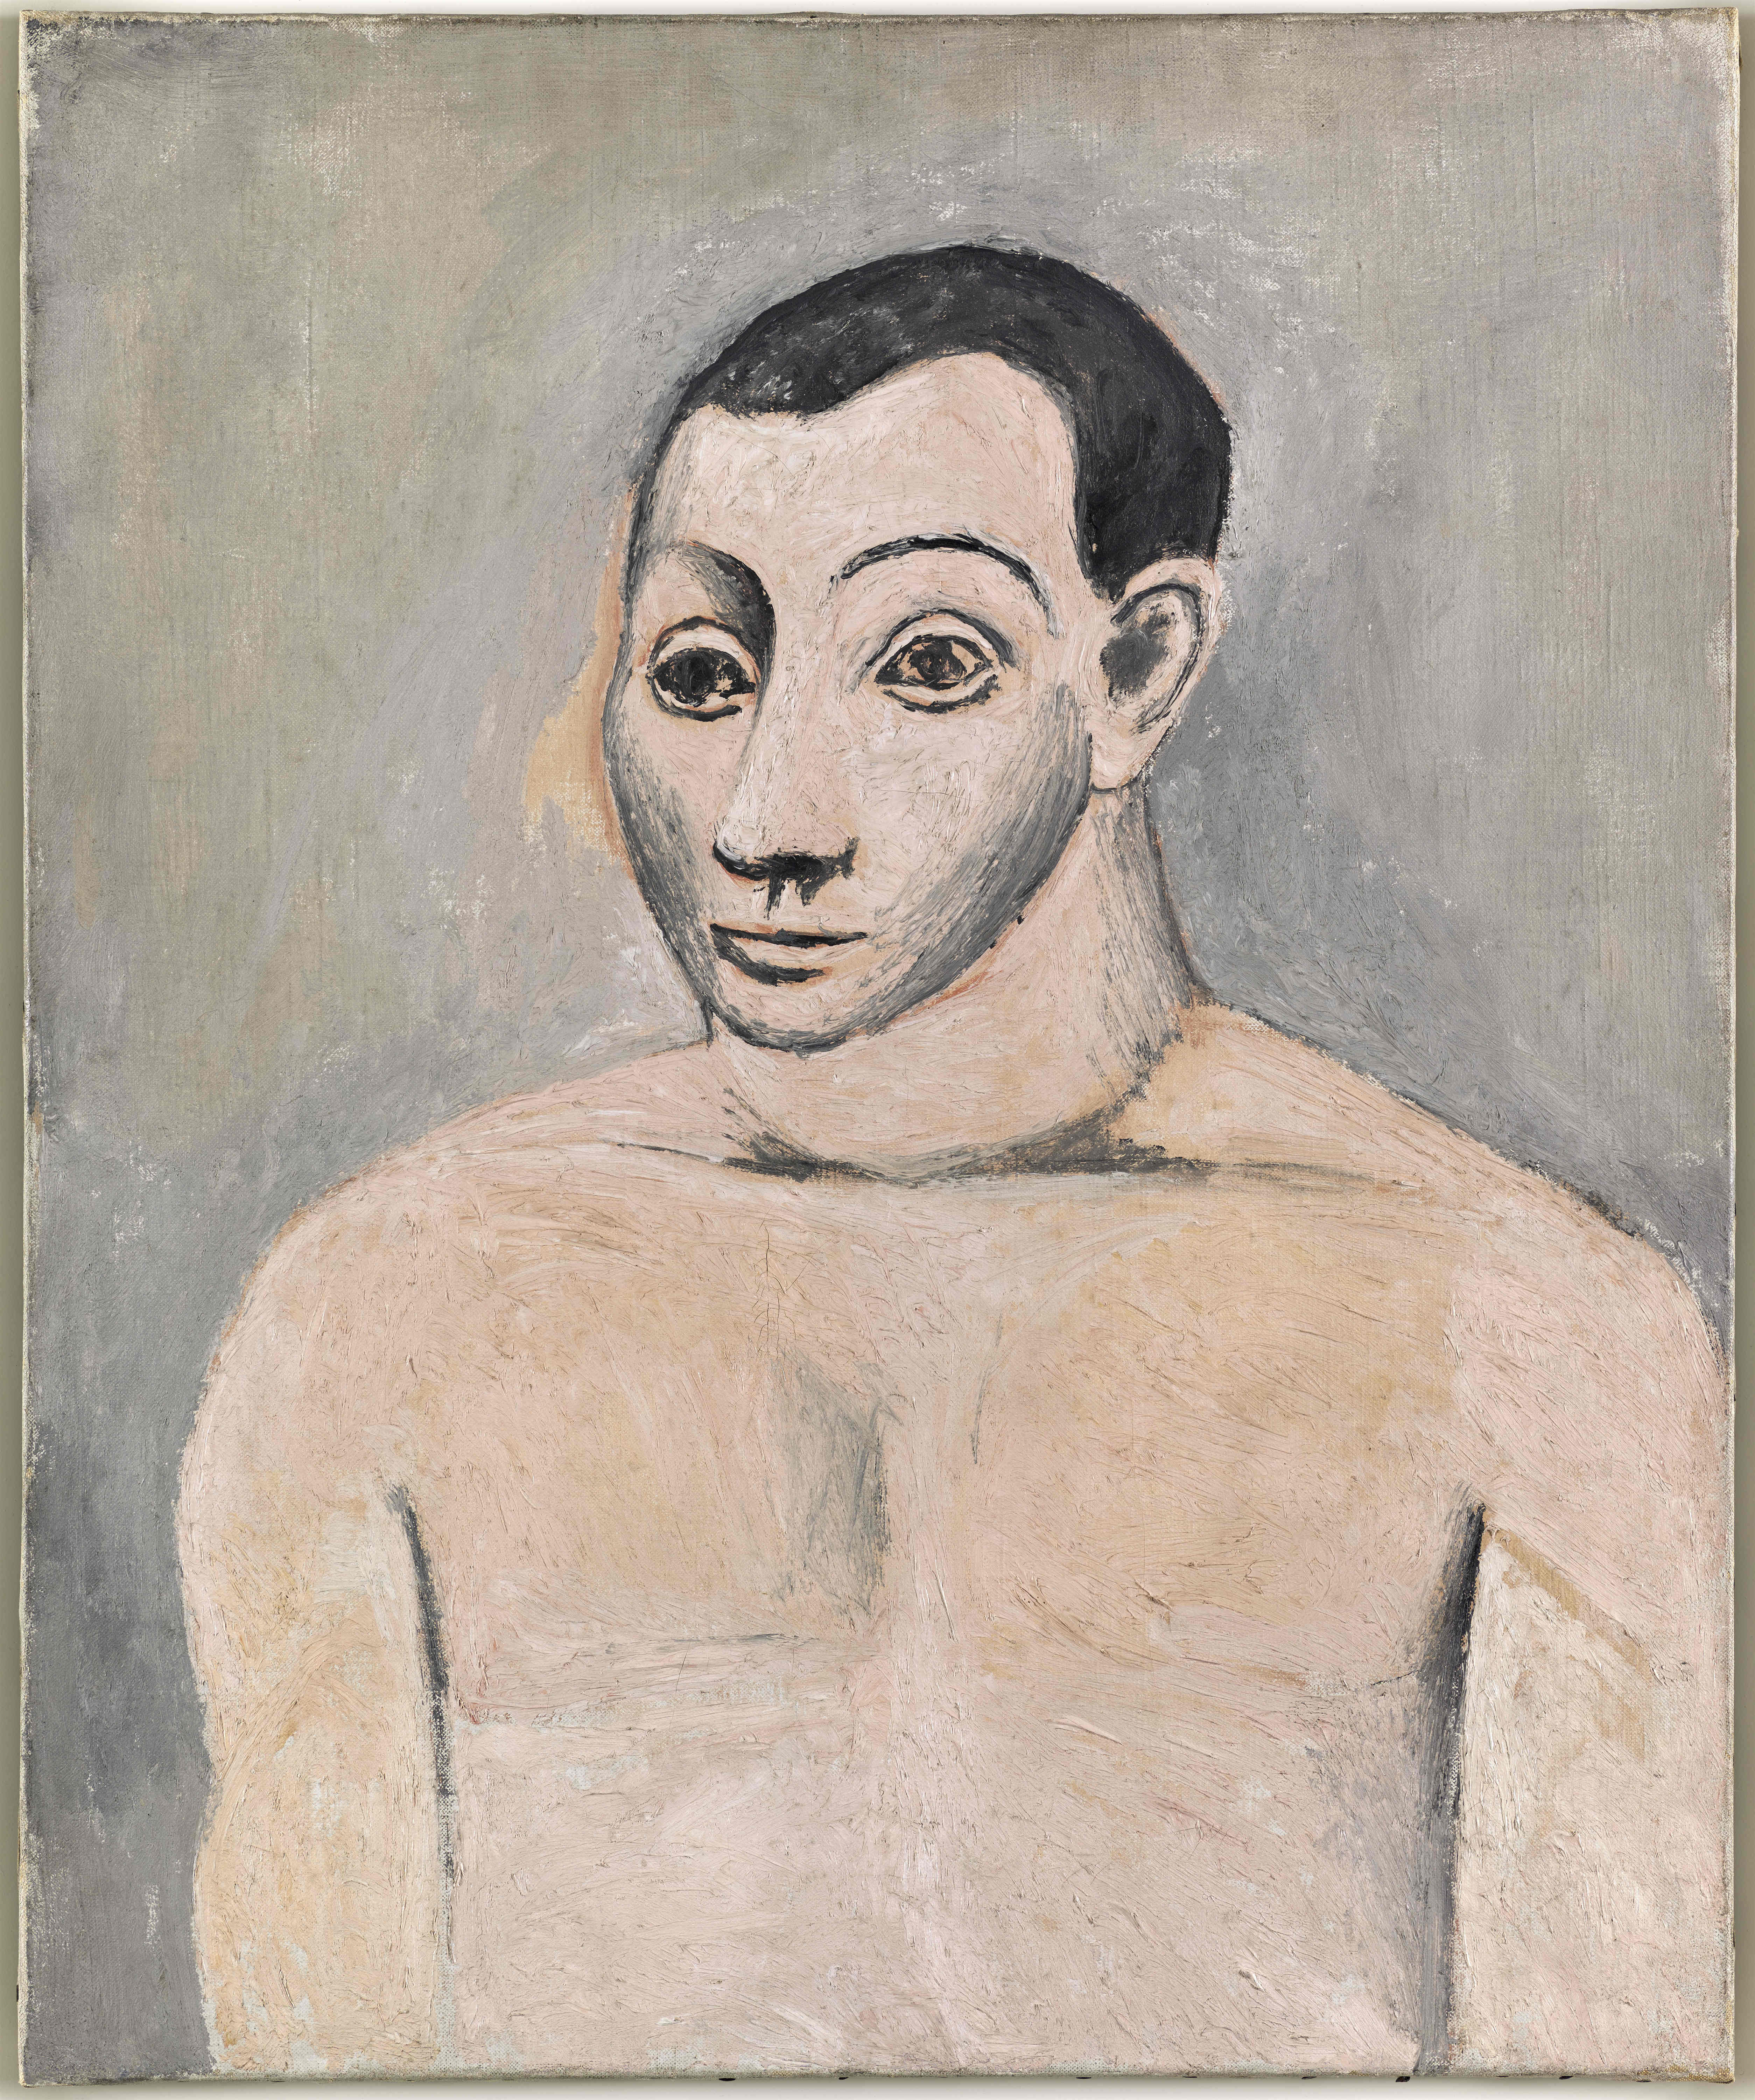 《自画像》 巴黎， 1906 年秋 布面油画 65 x 54 cm 国立巴黎毕加索博物馆 版权声明 Succession Picasso 2019